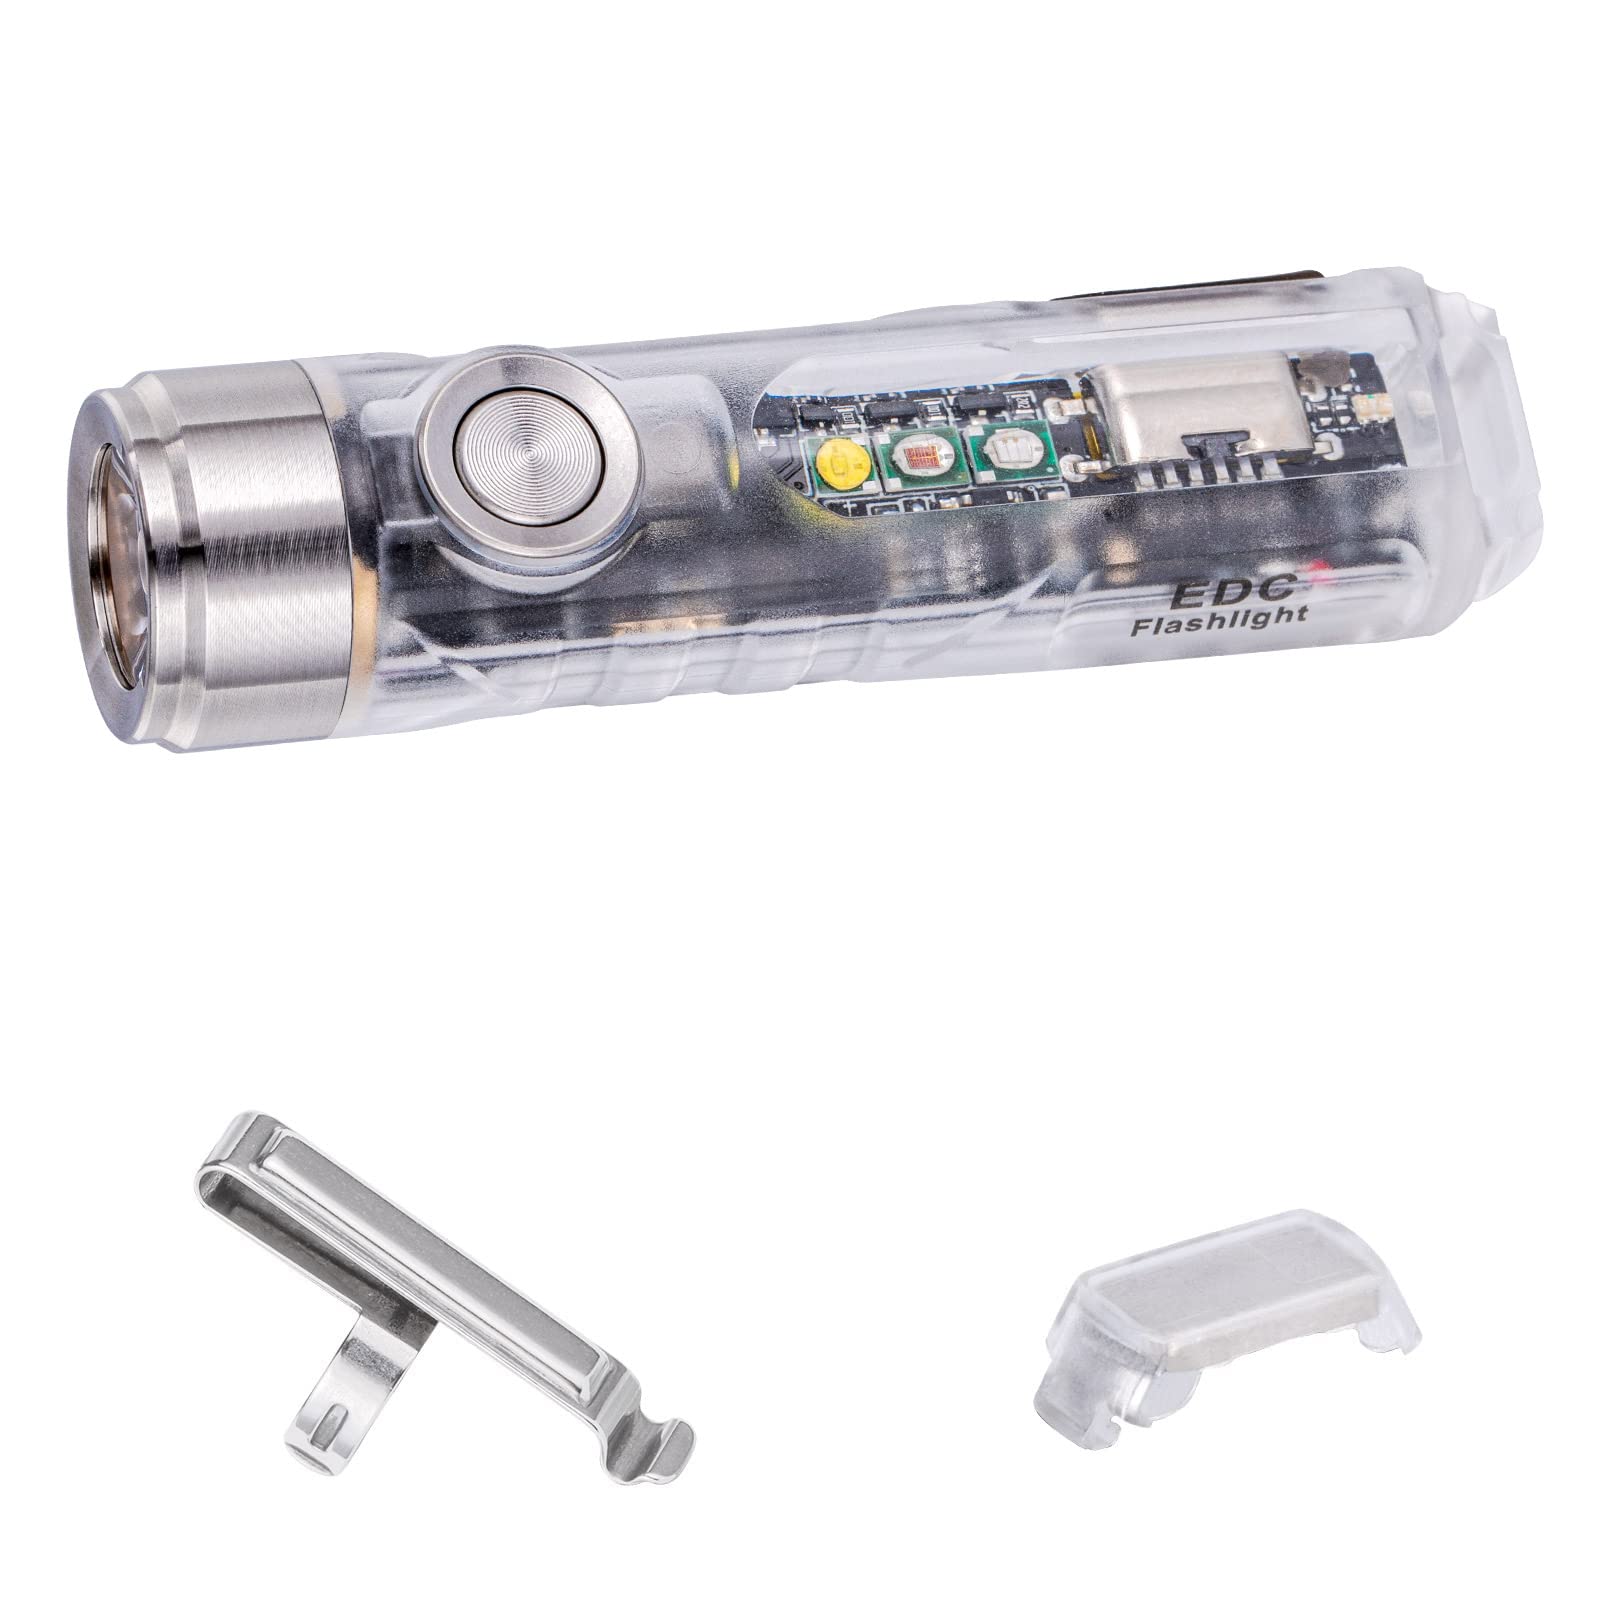 RovyVon A8x Multifunktionale Taschenlampe mit UV-Licht, EDC Schlüsselanhänger Taschenlampe, A8U: Nichia 219C